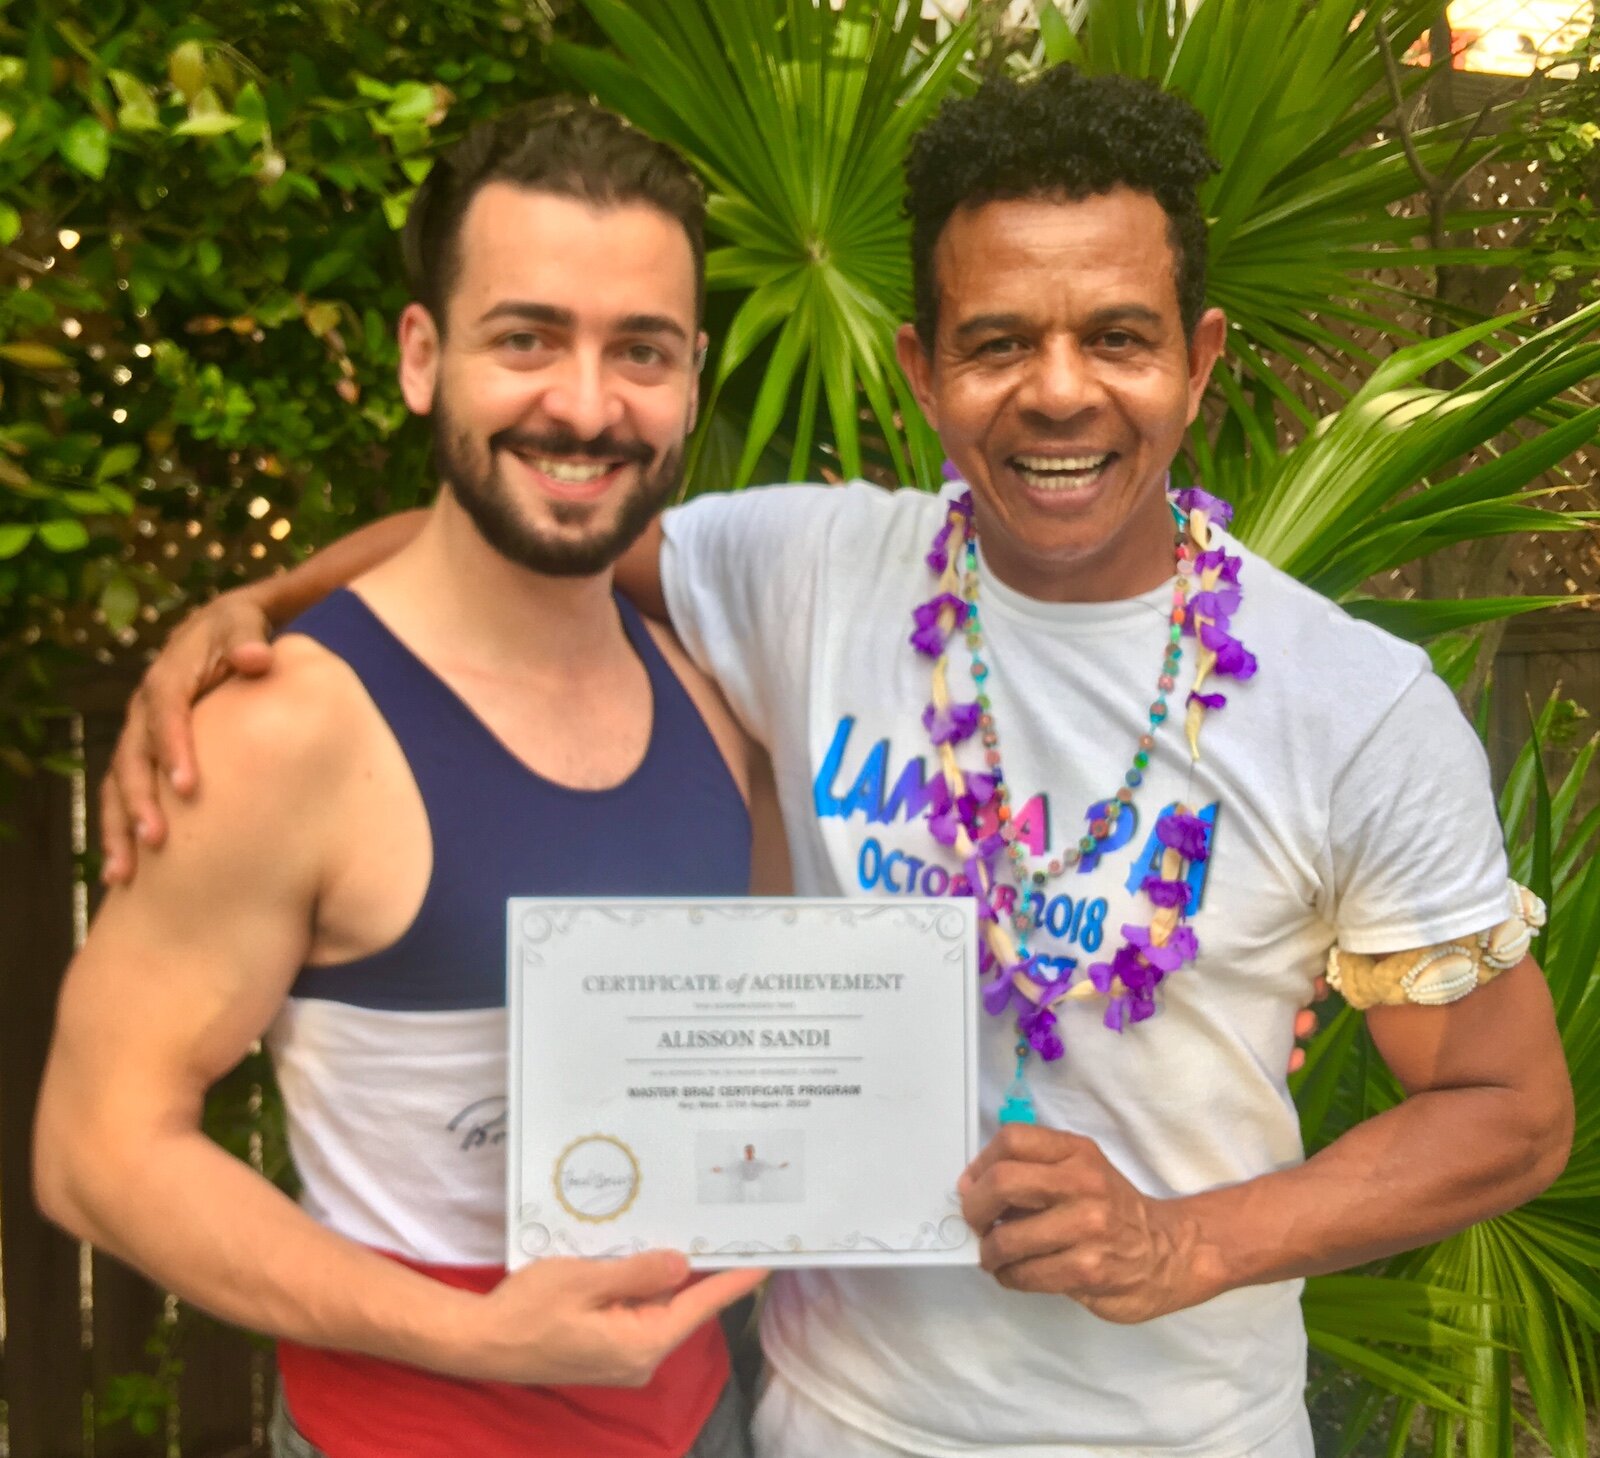 Alisson Sandi Completes Master Braz Certificate Course 2019